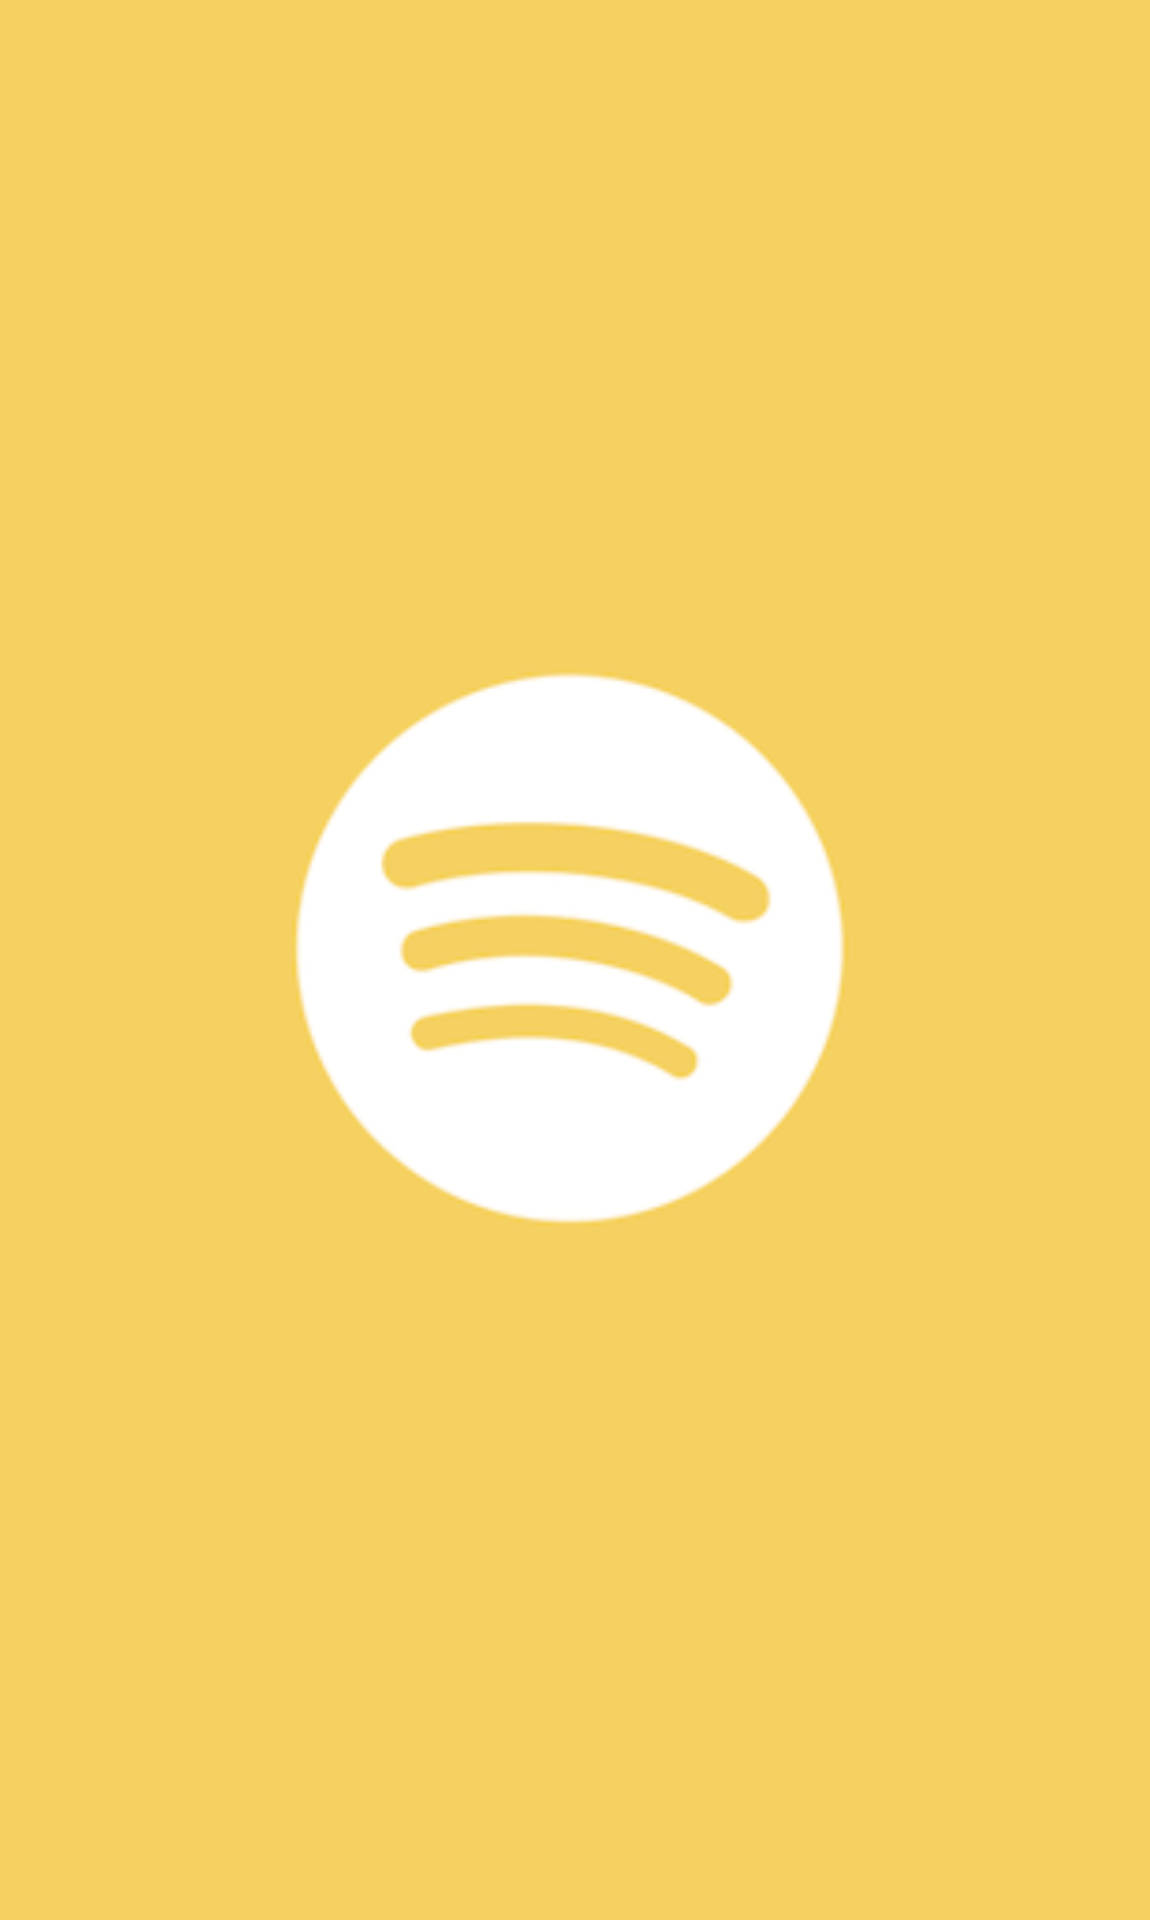 Minimalist Spotify Yellow Background